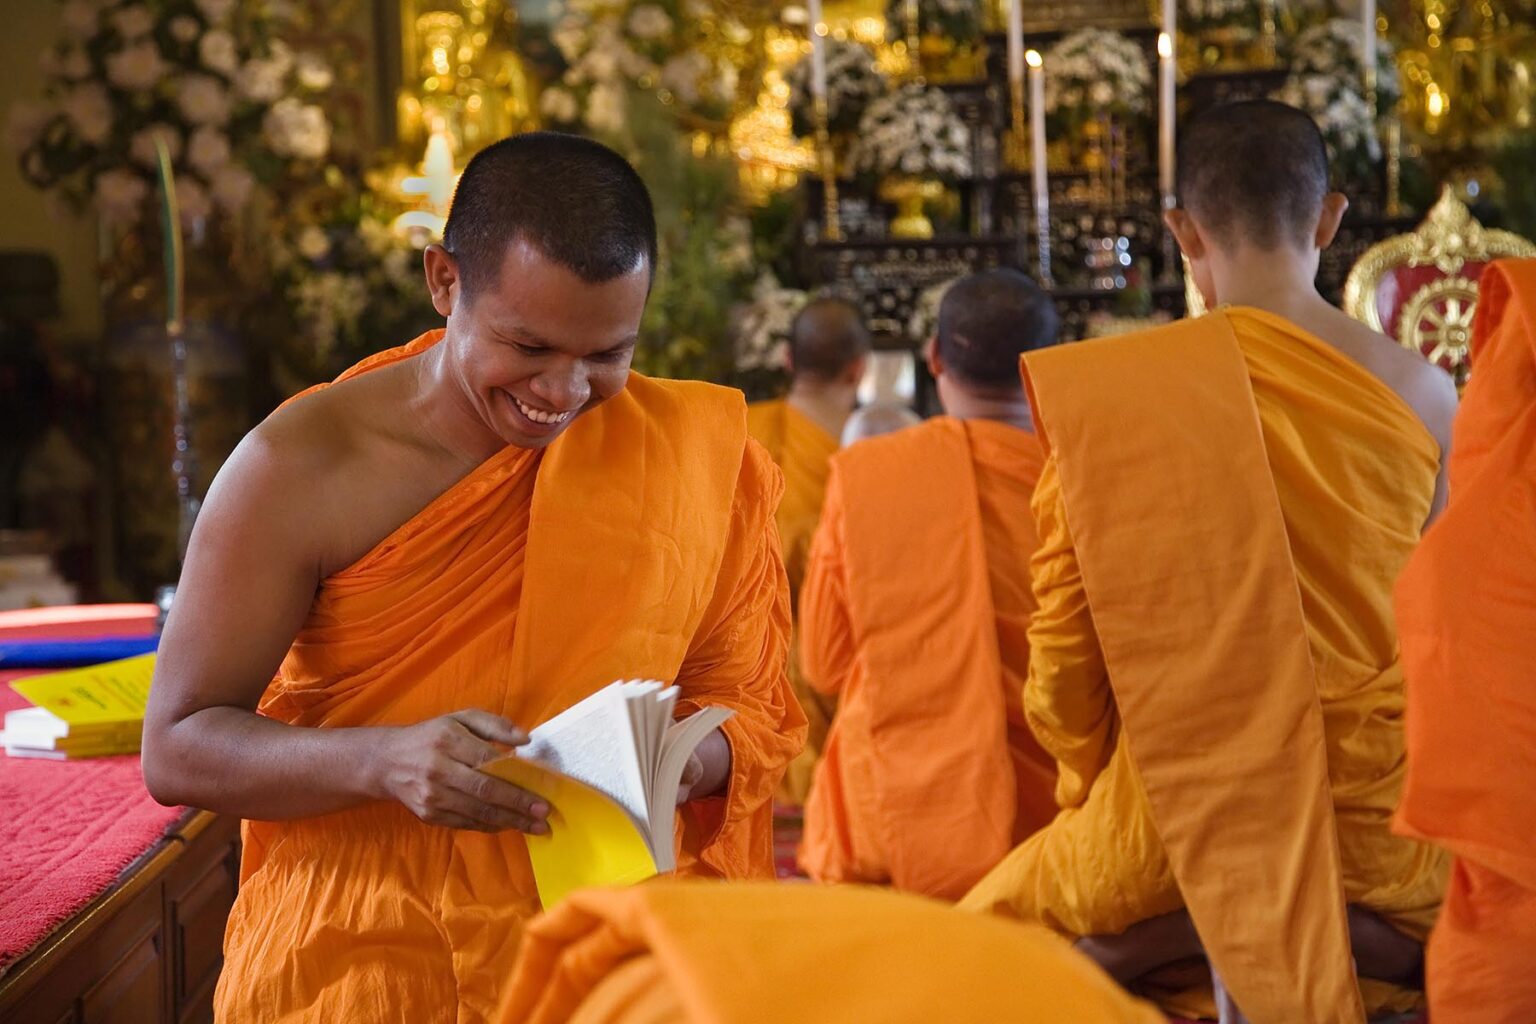 THAI HINAYANA MONKS worship at the Buddhist Temple of WAT INTHARAVIHAN or INDRAWIHAN - BANGKOK, THAILAND